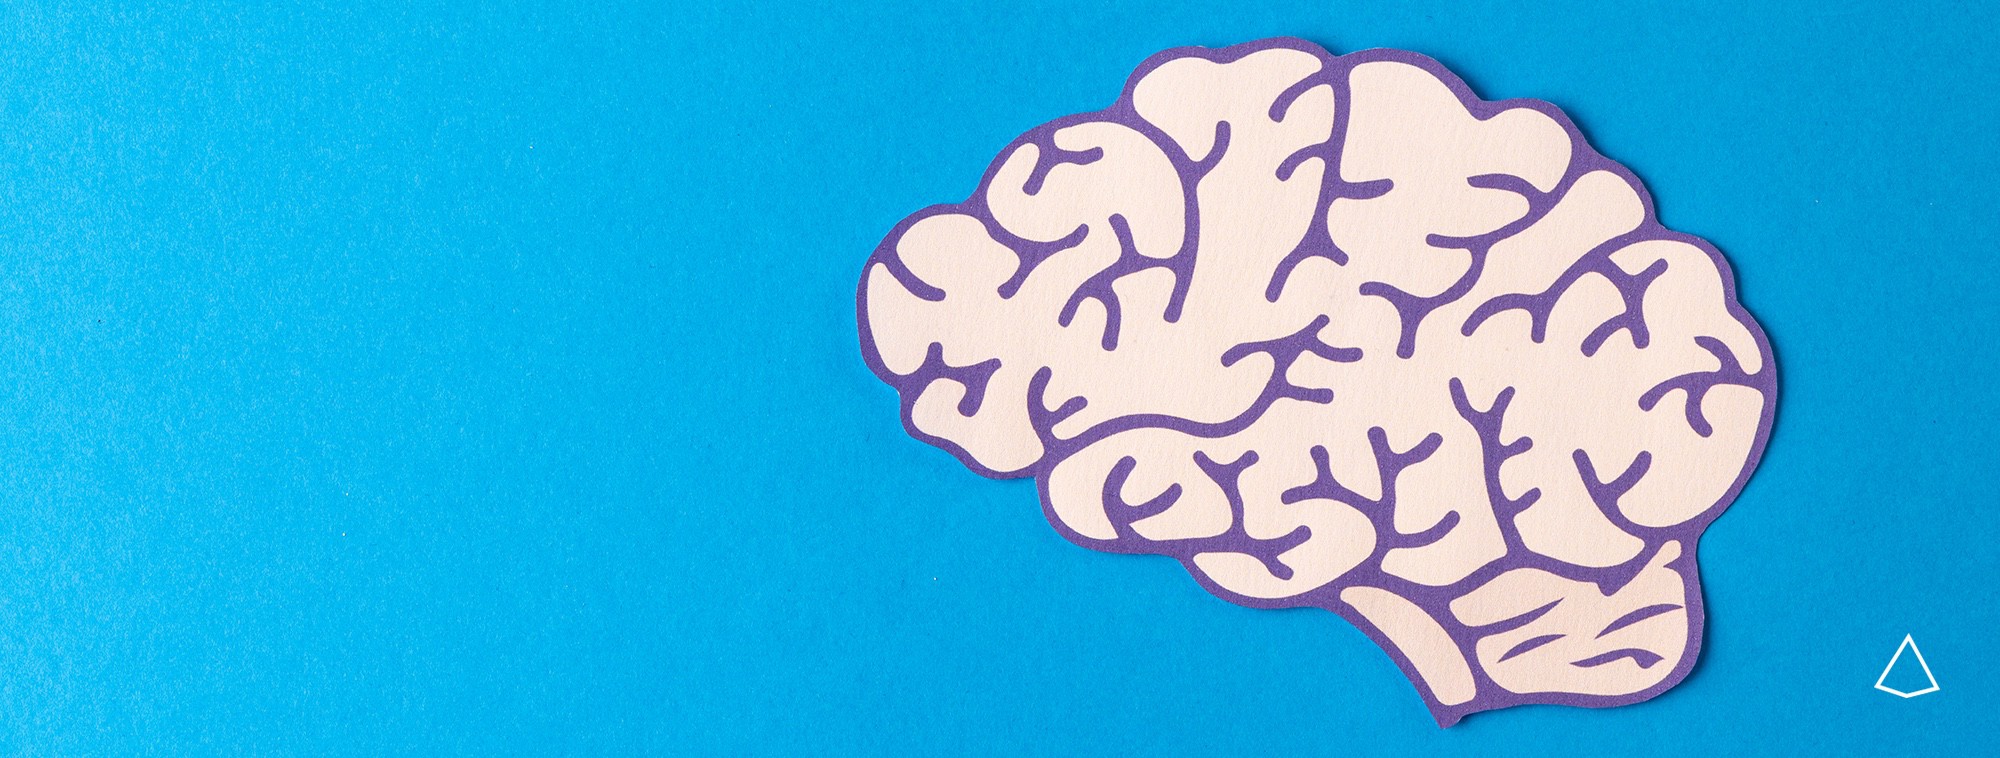 Rappresentazione stilizzata di un cervello su fondo azzurro sfumato.